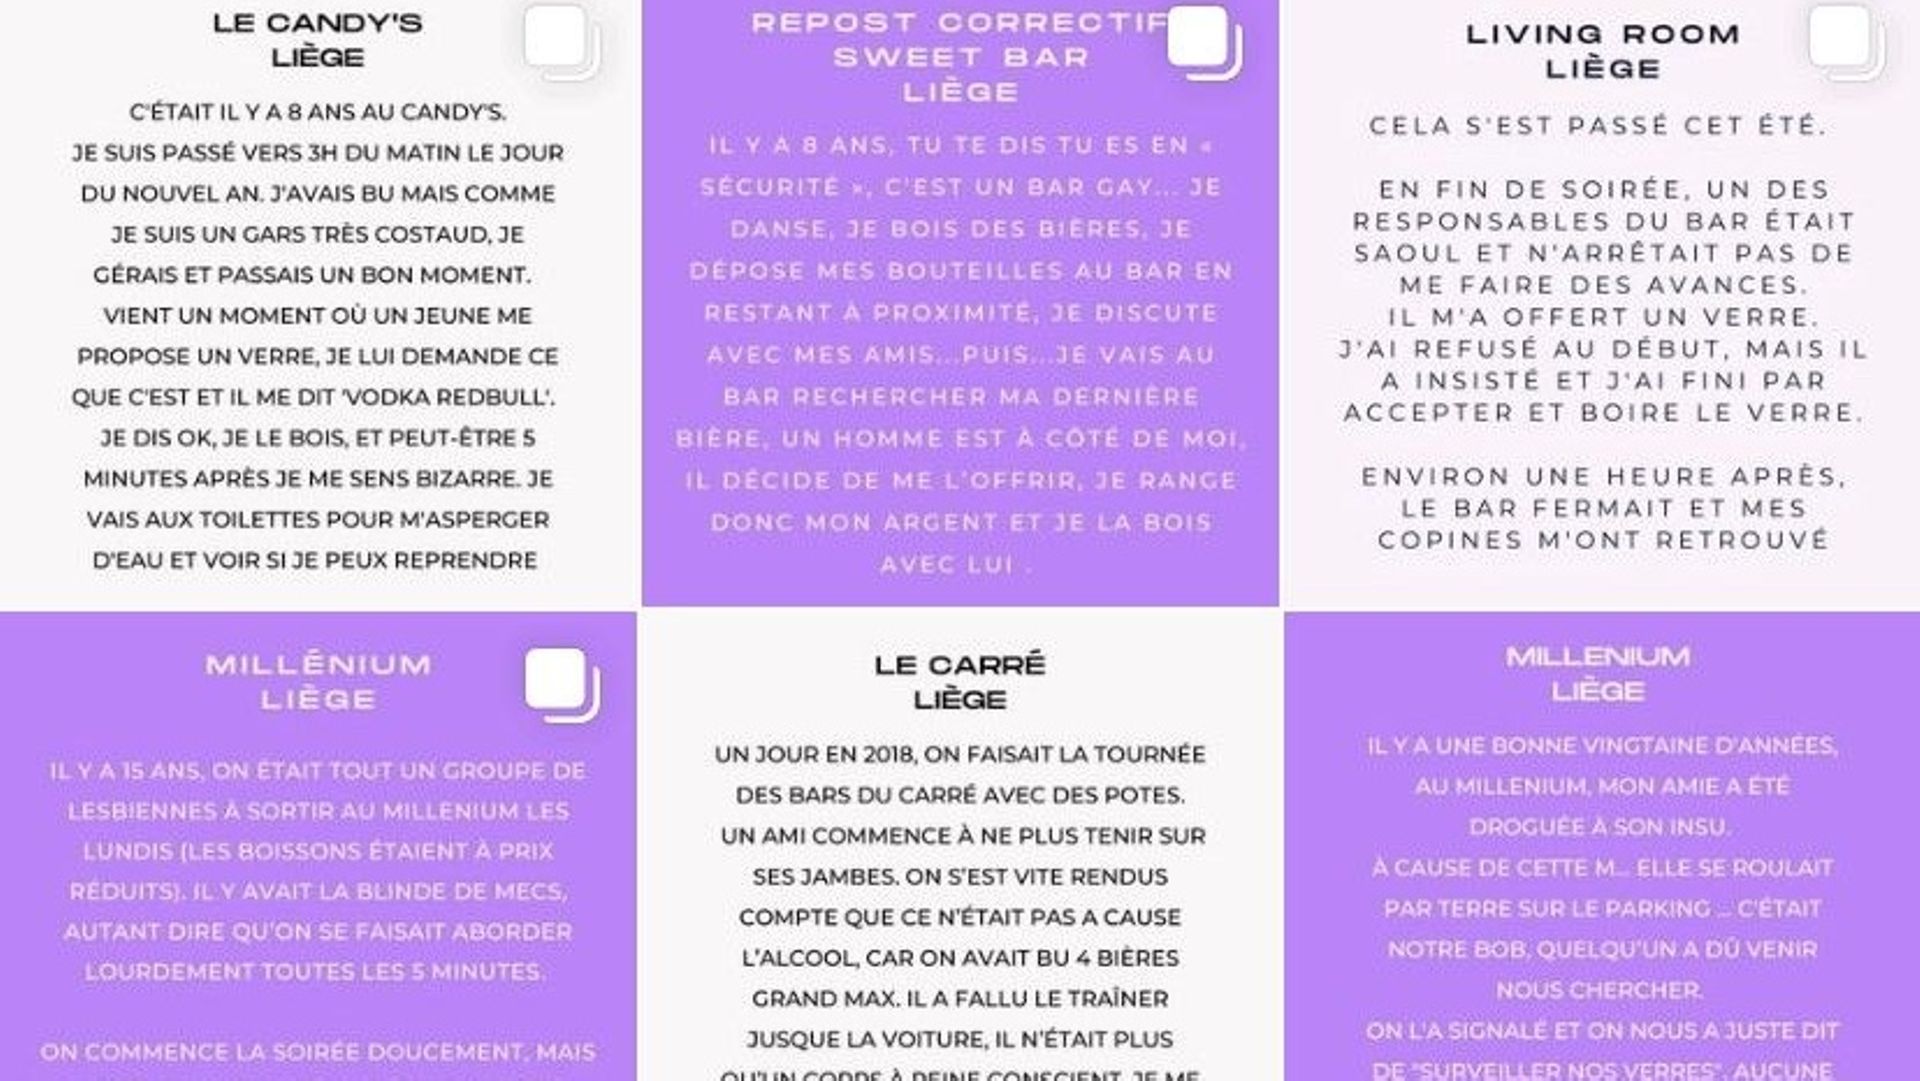 La page Instagram "Balance ton bar Liège" a publié 48 témoignages de femmes et de jeunes filles victimes d’agressions